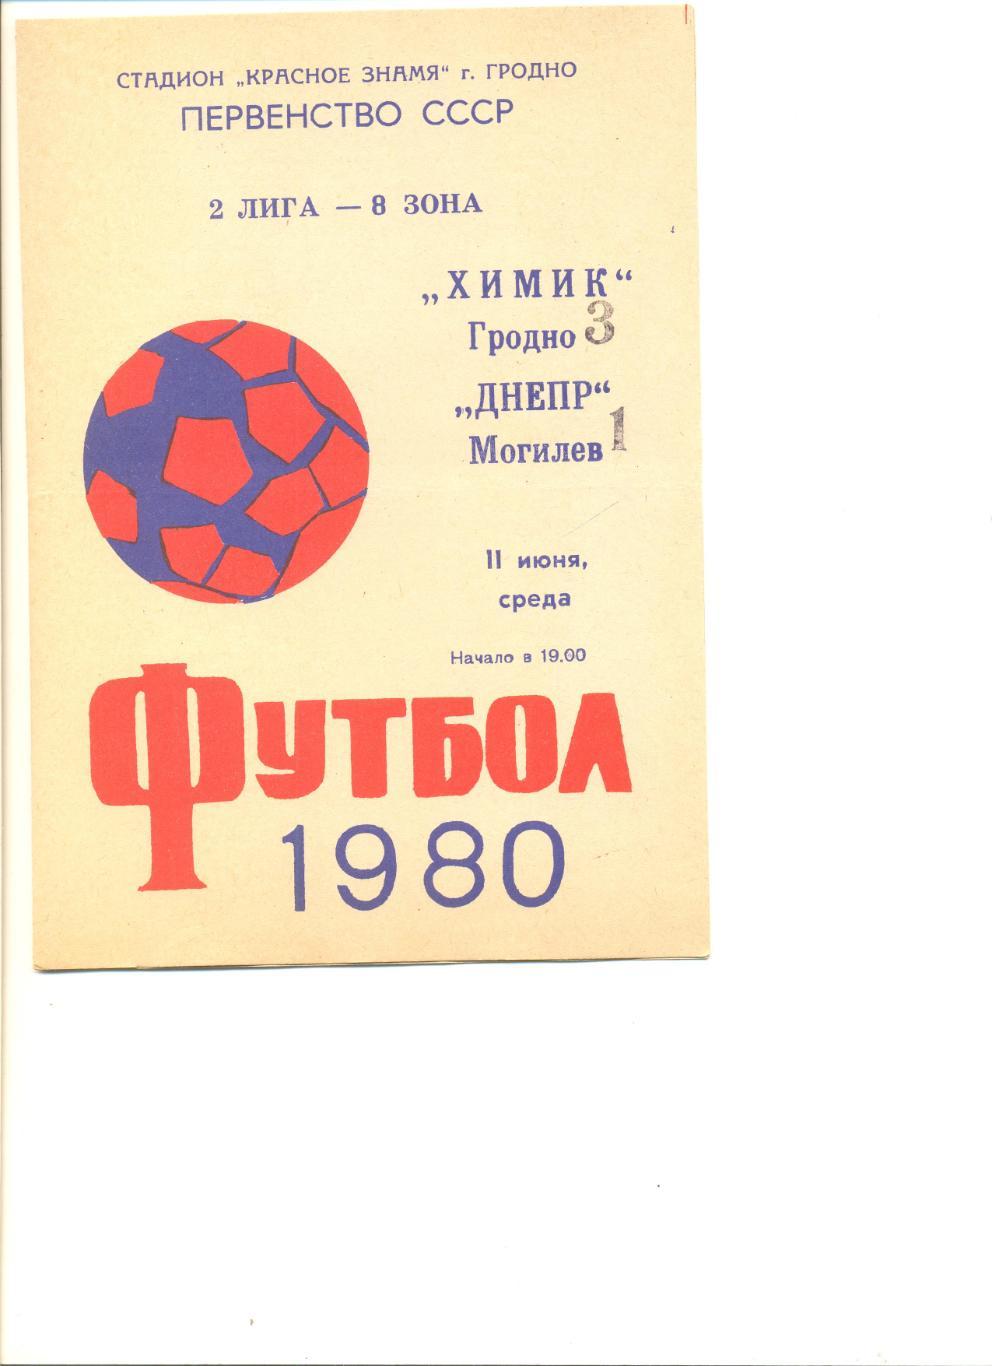 Химик Гродно - Днепр Могилев 11.06.1980 г.